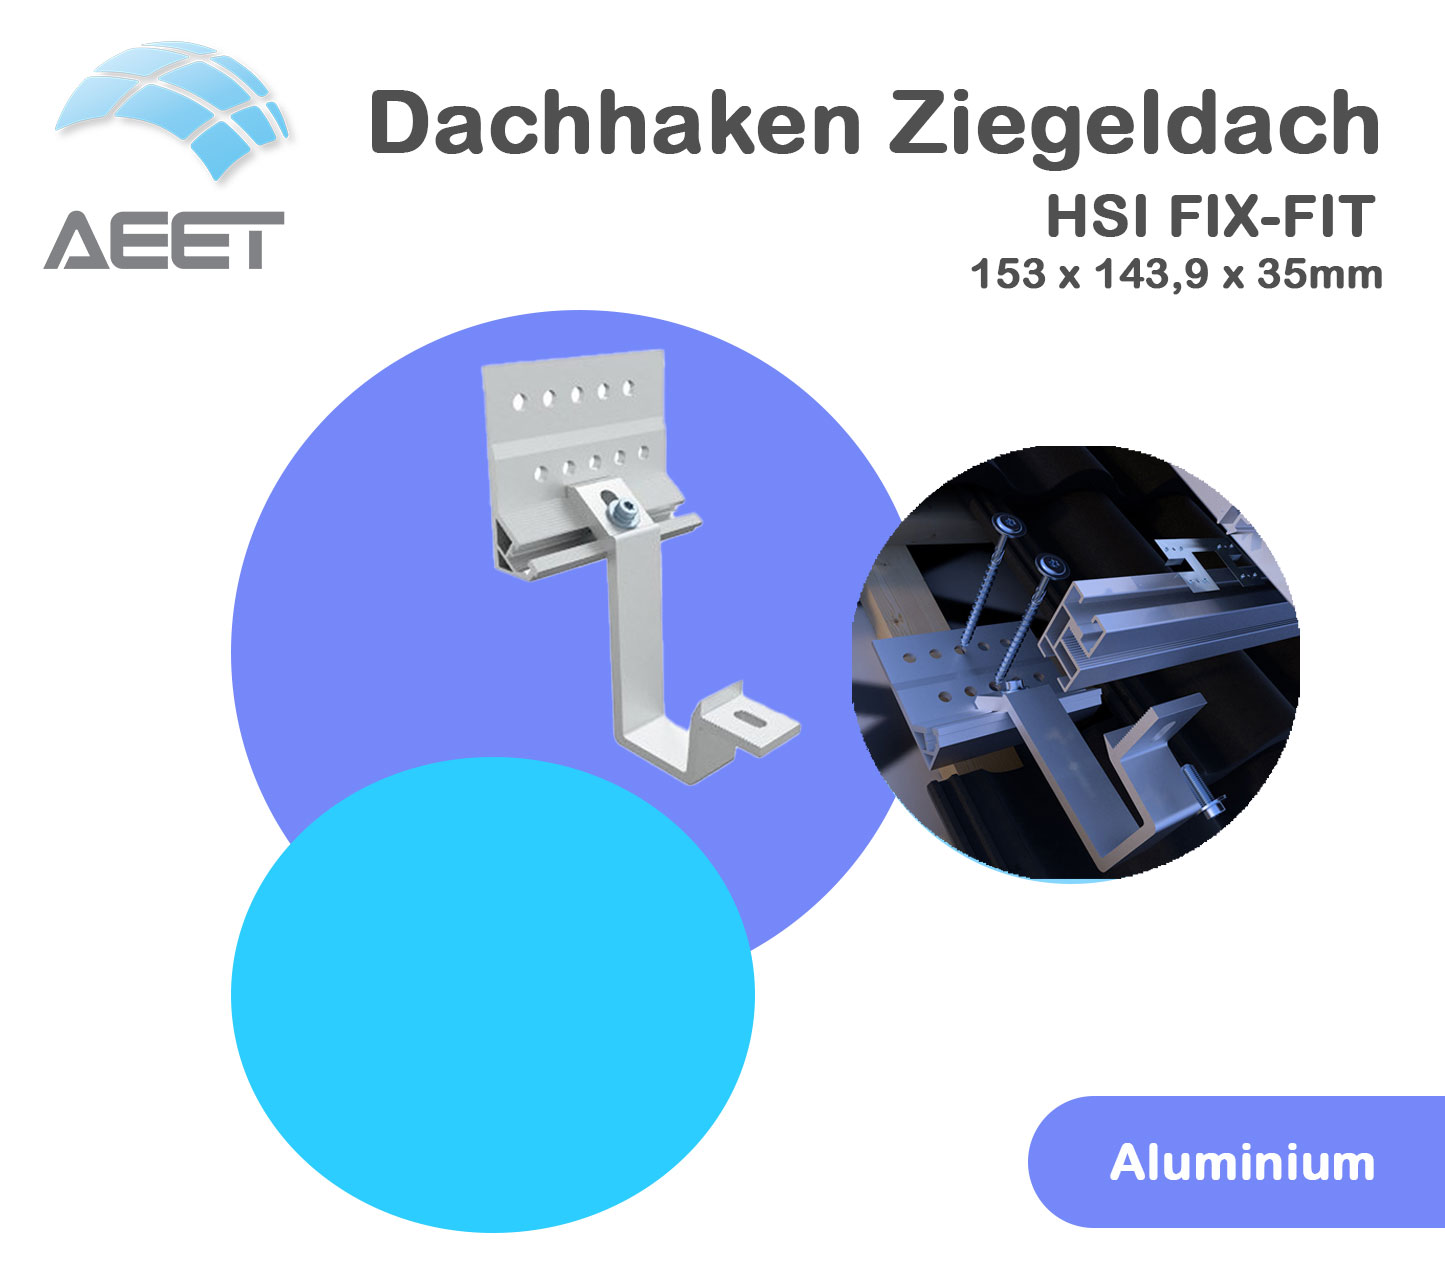 Dachhaken Ziegeldach HSI FIX-FIT Aluminium